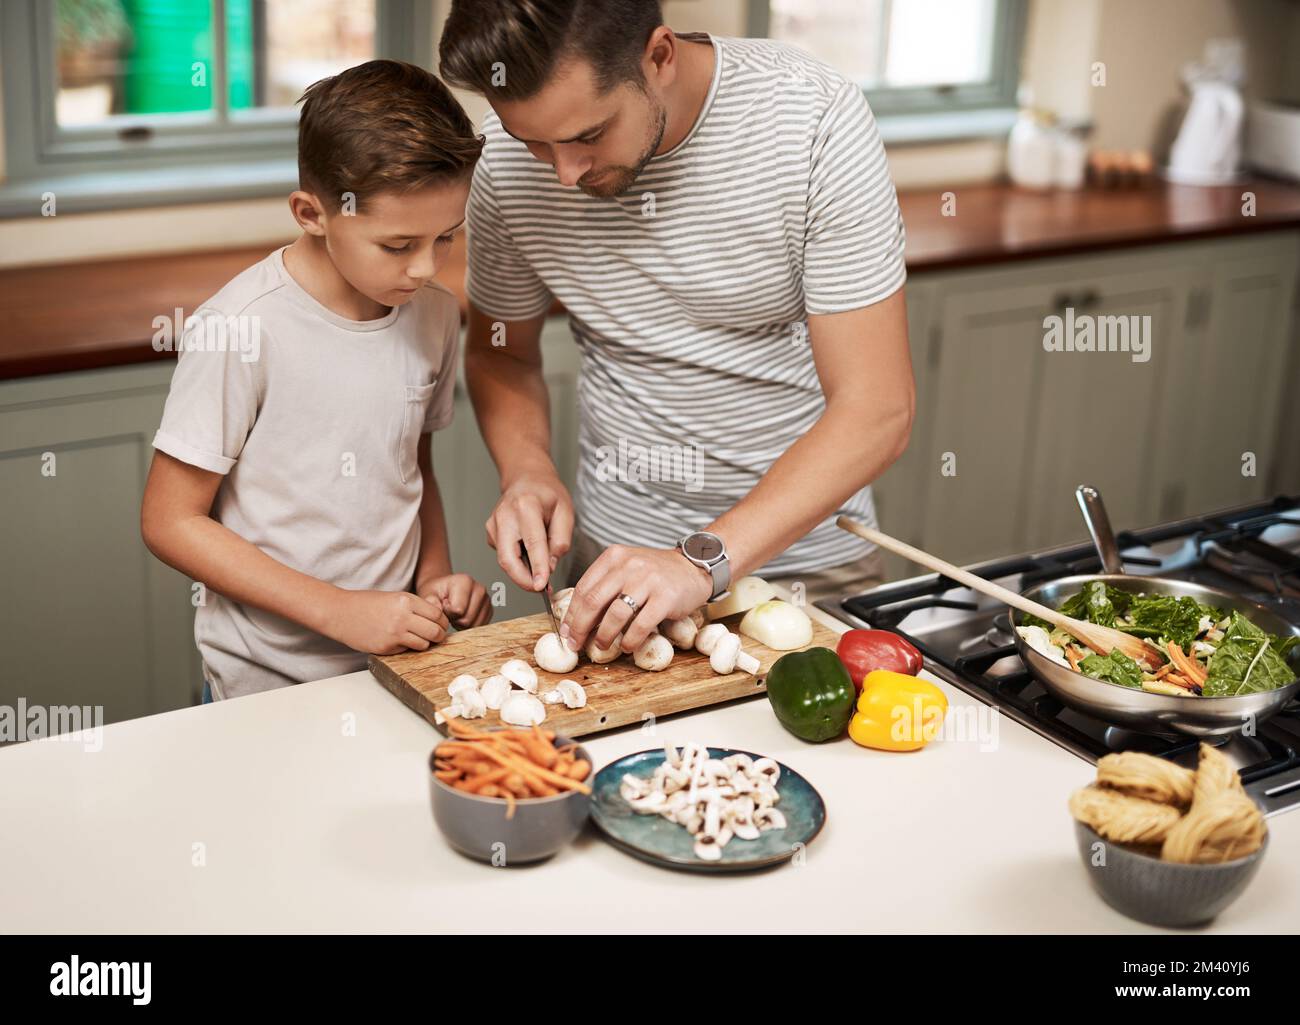 Pass nur auf, dass du dich nicht schneidest. Ein Junge, der seinem Vater beim Kochen hilft. Stockfoto